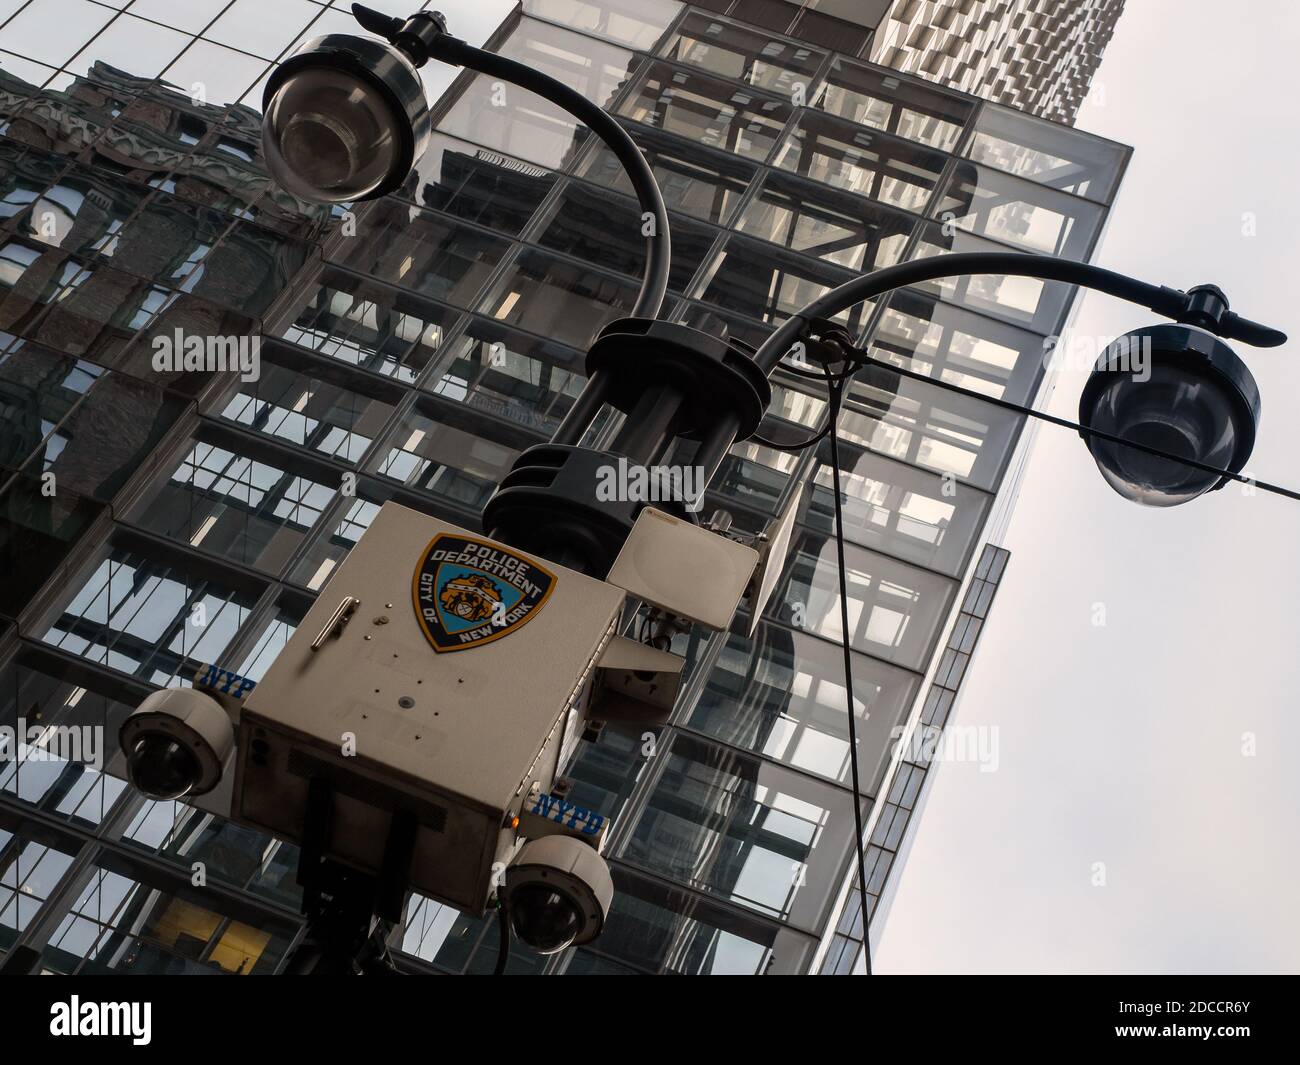 NUEVA YORK, EE.UU.: Cámaras de seguridad de la policía de NYPD Foto de stock